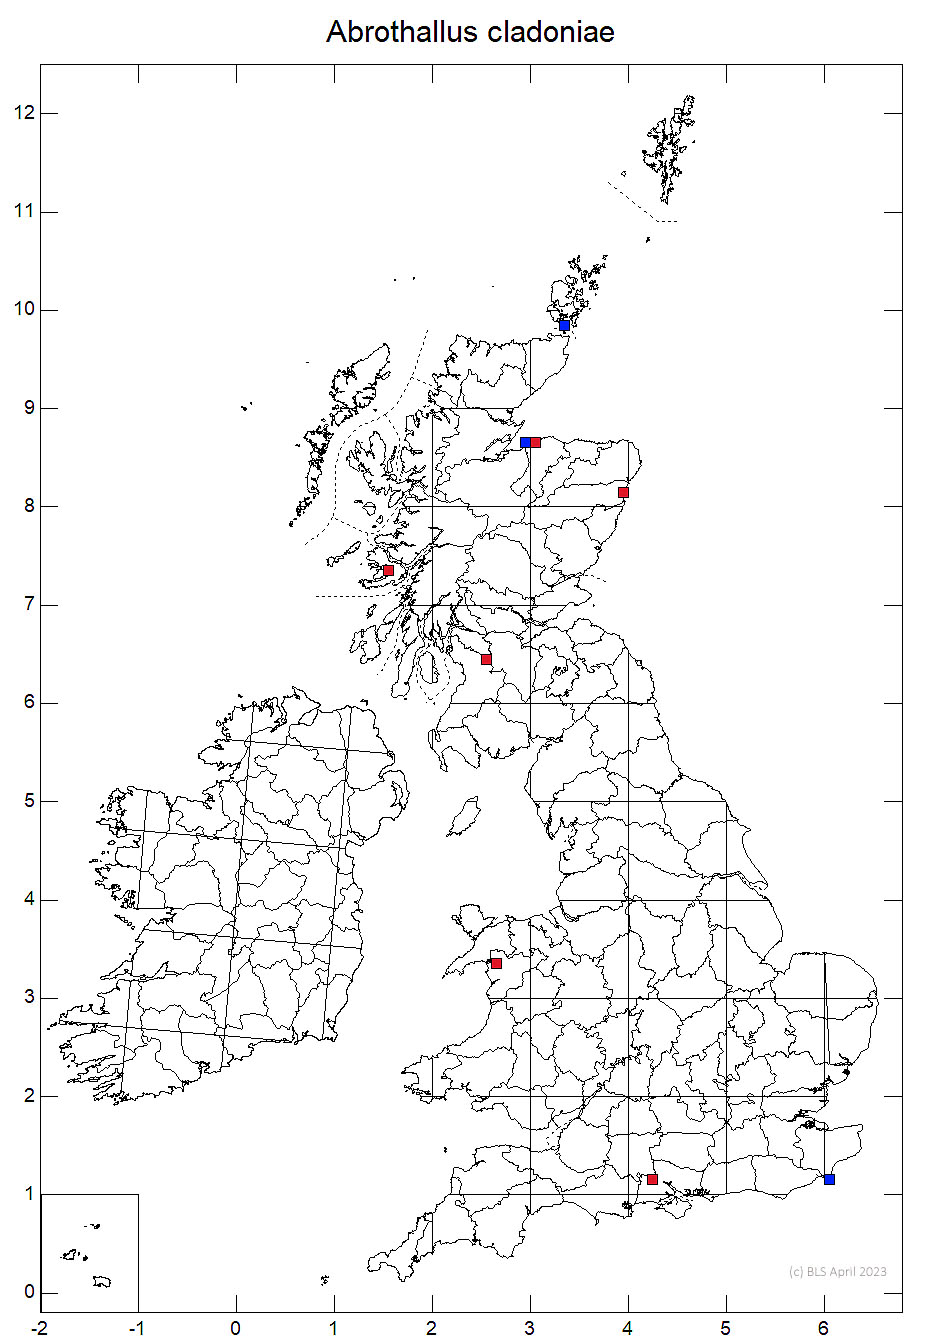 Abrothallus cladoniae 10km sq distribution map